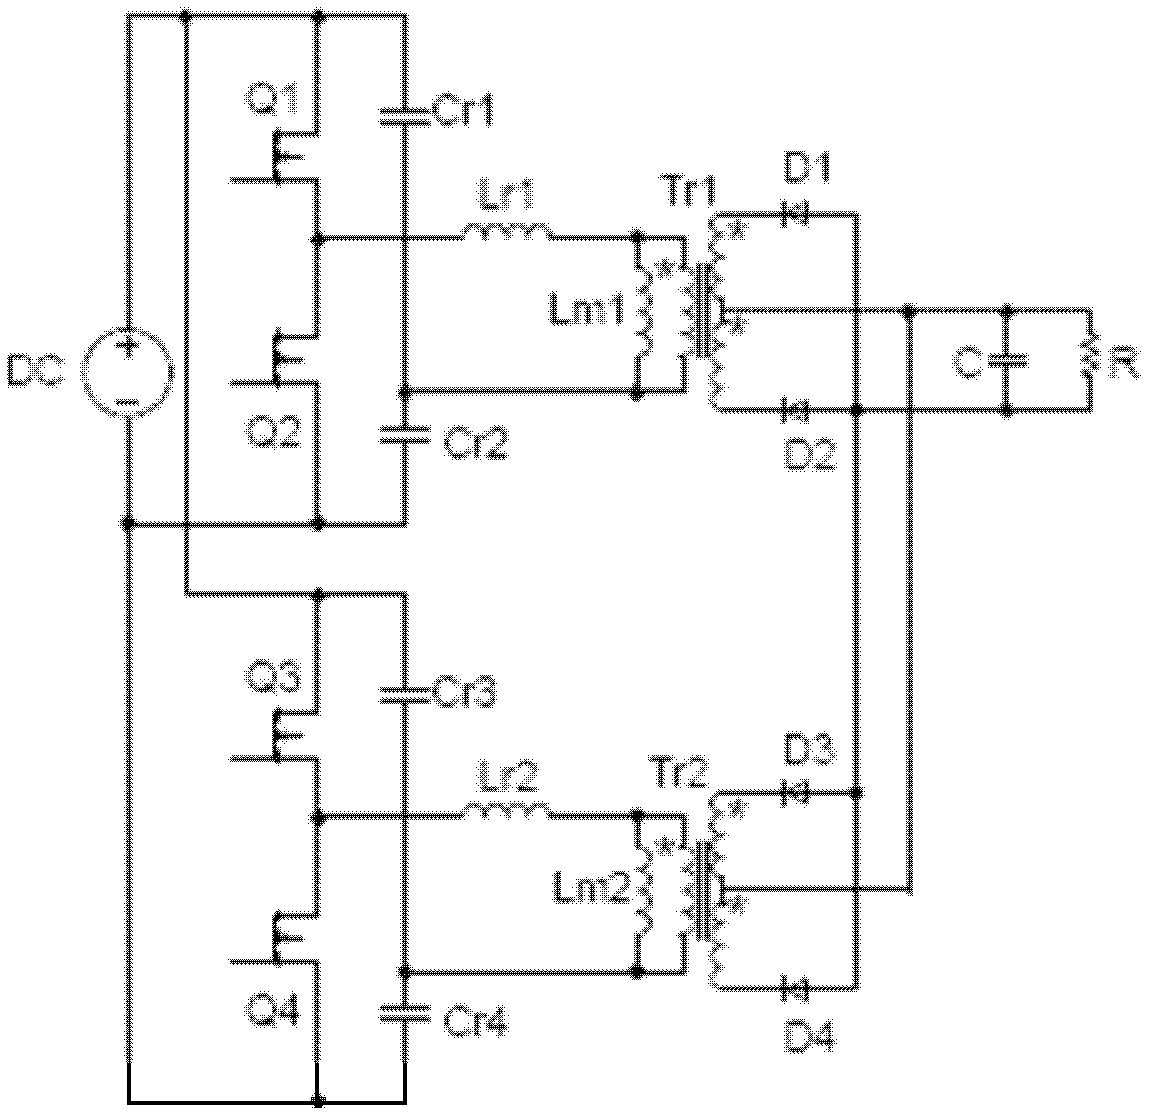 Resonant switching circuit